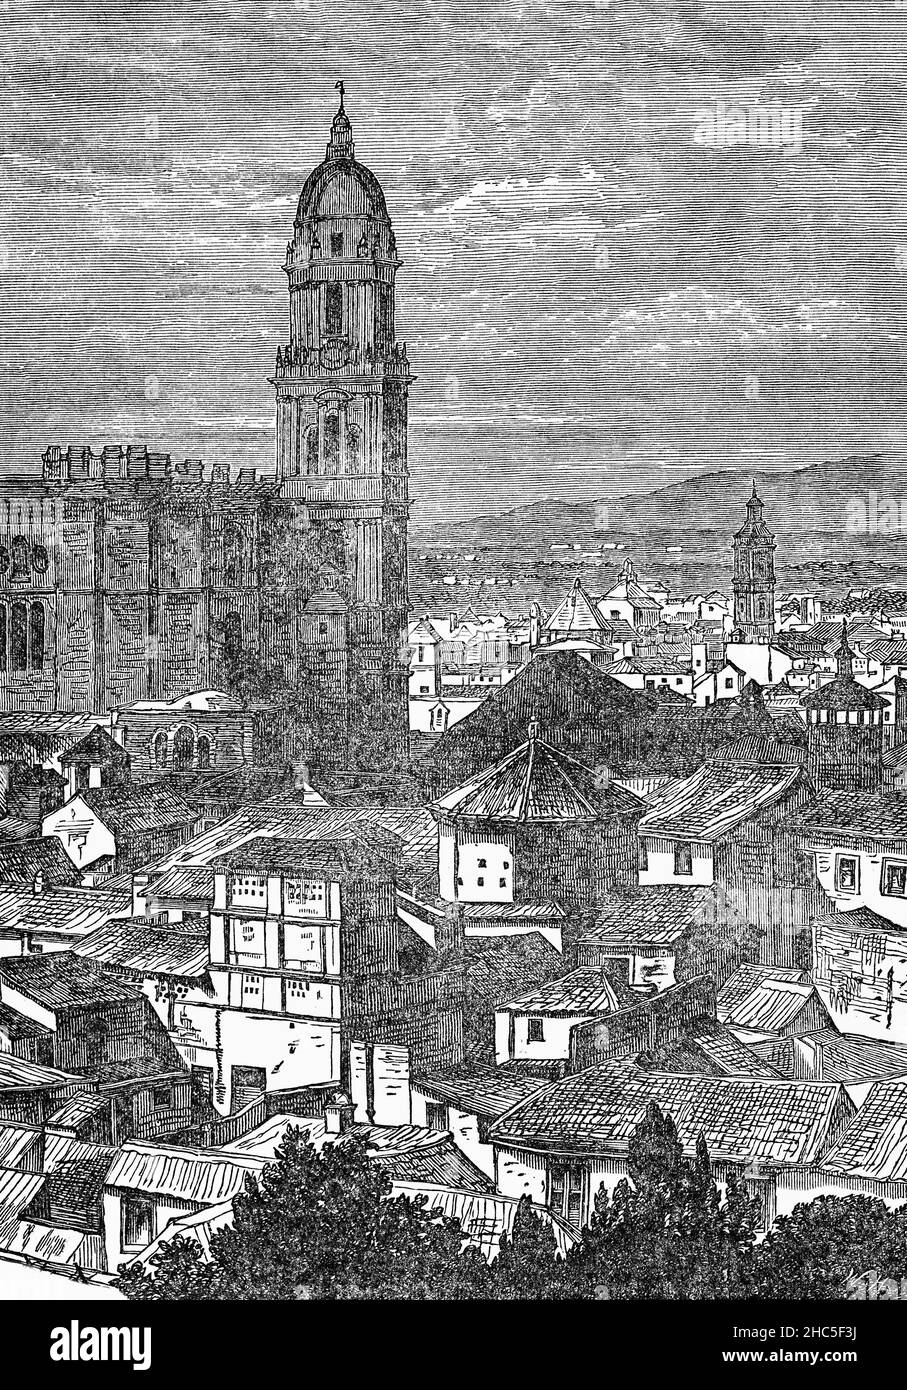 Un'illustrazione di fine 19th secolo della città andalusa di Malaga. L'assedio di Málaga (1487) fu un'azione che durò circa quattro mesi durante la Reconquista della Spagna, in cui i monarchi cattolici di Spagna conquistarono la città di Mālaqa dall'Emirato di Granada. La maggior parte della popolazione sopravvissuta della città fu schiavizzata o messa a morte dai conquistatori. Geopoliticamente, la perdita della seconda città più grande dell'emirato, dopo Granada stessa, e del suo porto più importante fu una perdita importante per Granada. Foto Stock